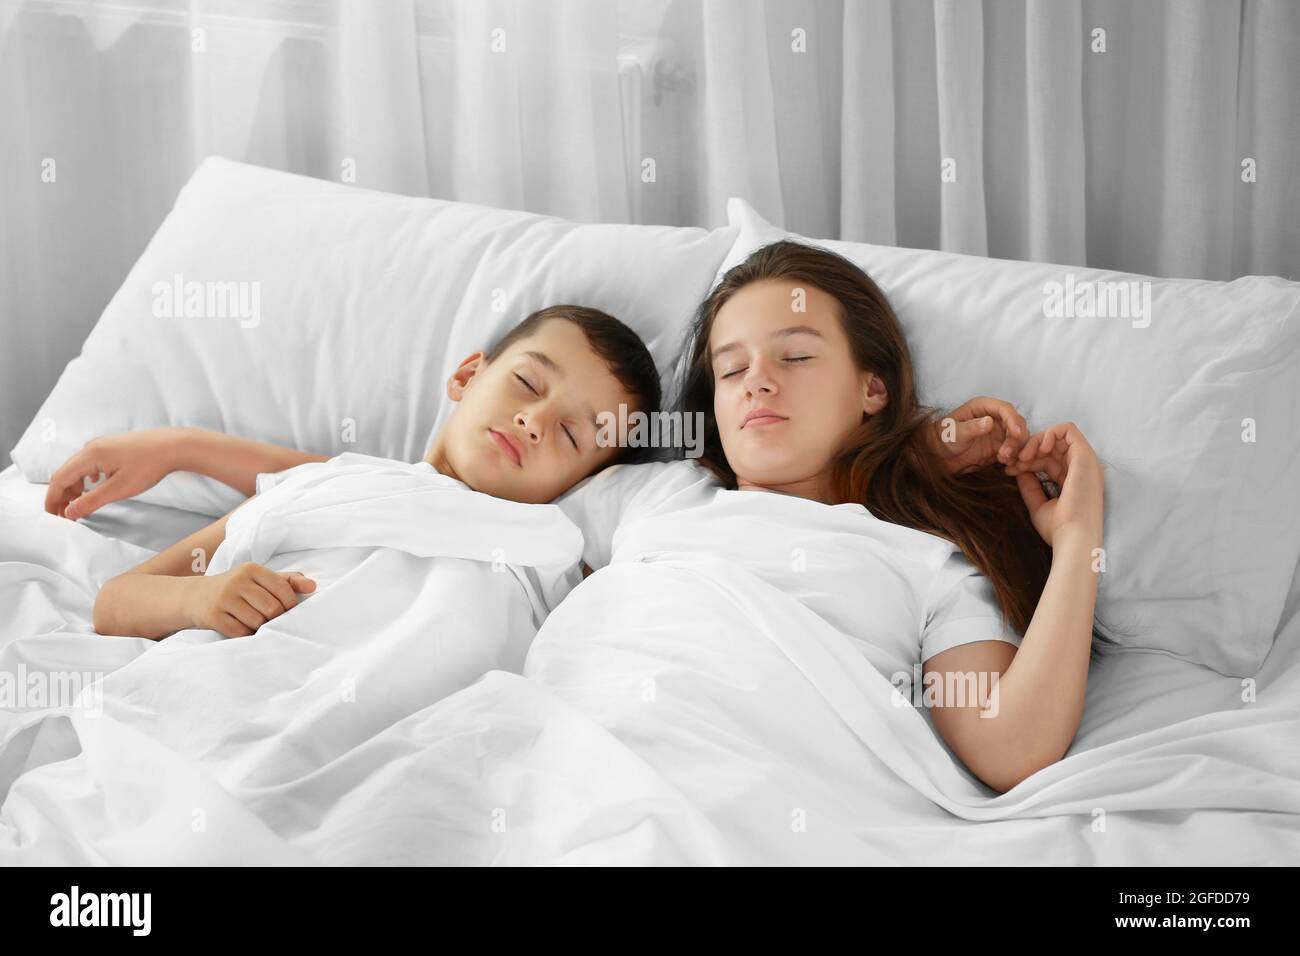 Bruder und Schwester schlafen im Bett Stockfotografie - Alamy